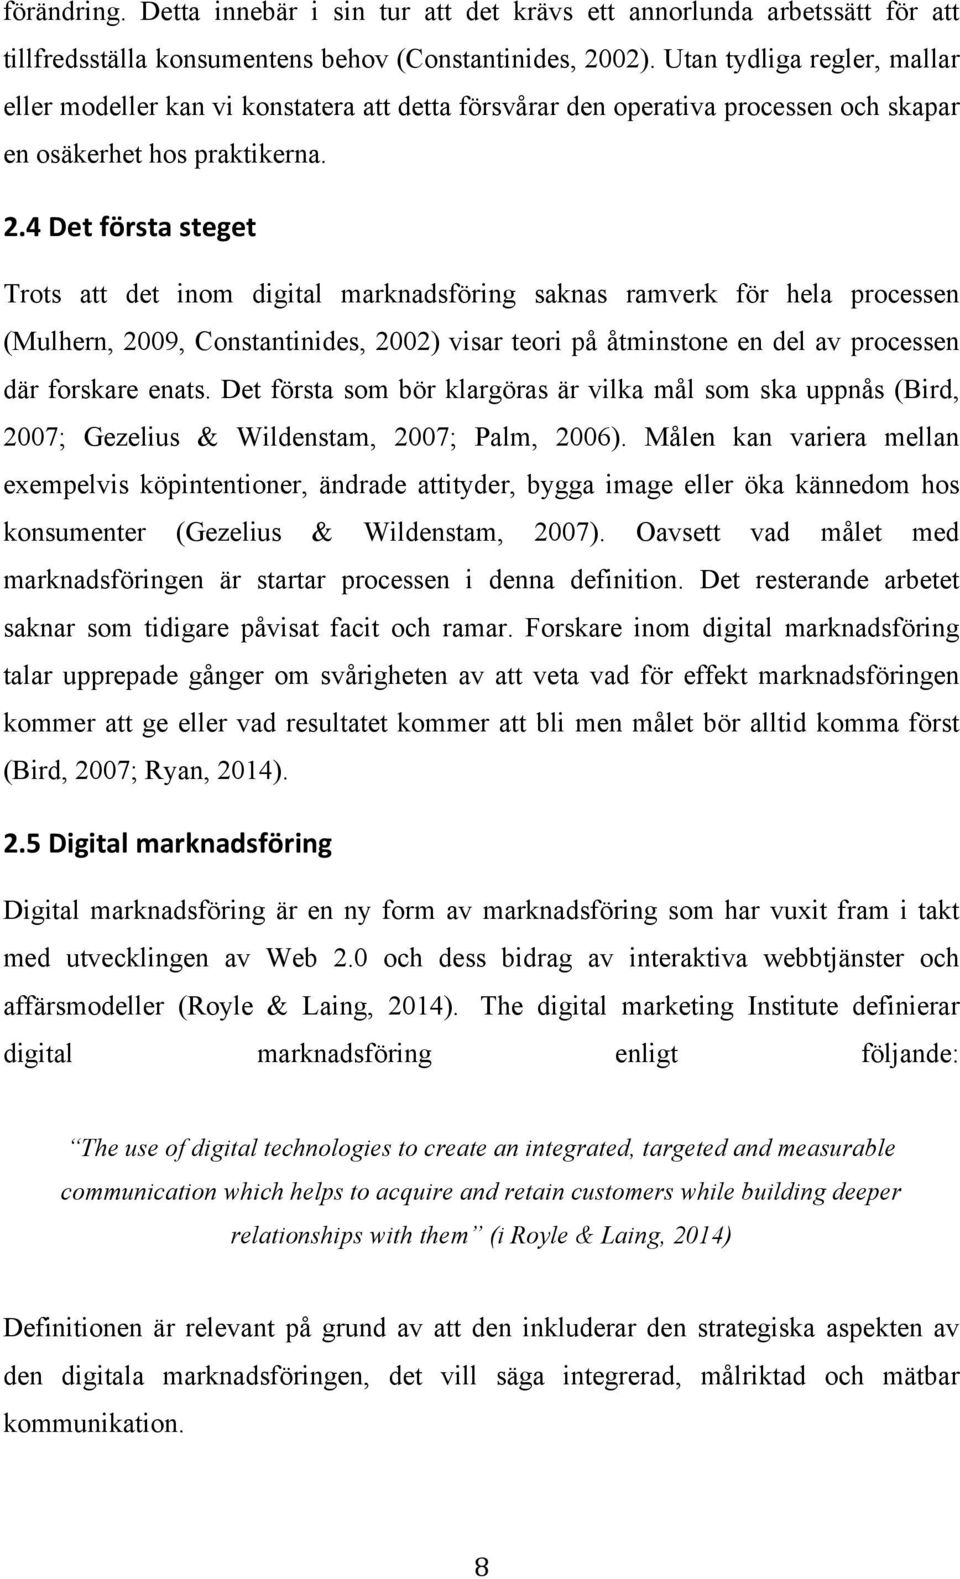 4 Det första steget Trots att det inom digital marknadsföring saknas ramverk för hela processen (Mulhern, 2009, Constantinides, 2002) visar teori på åtminstone en del av processen där forskare enats.